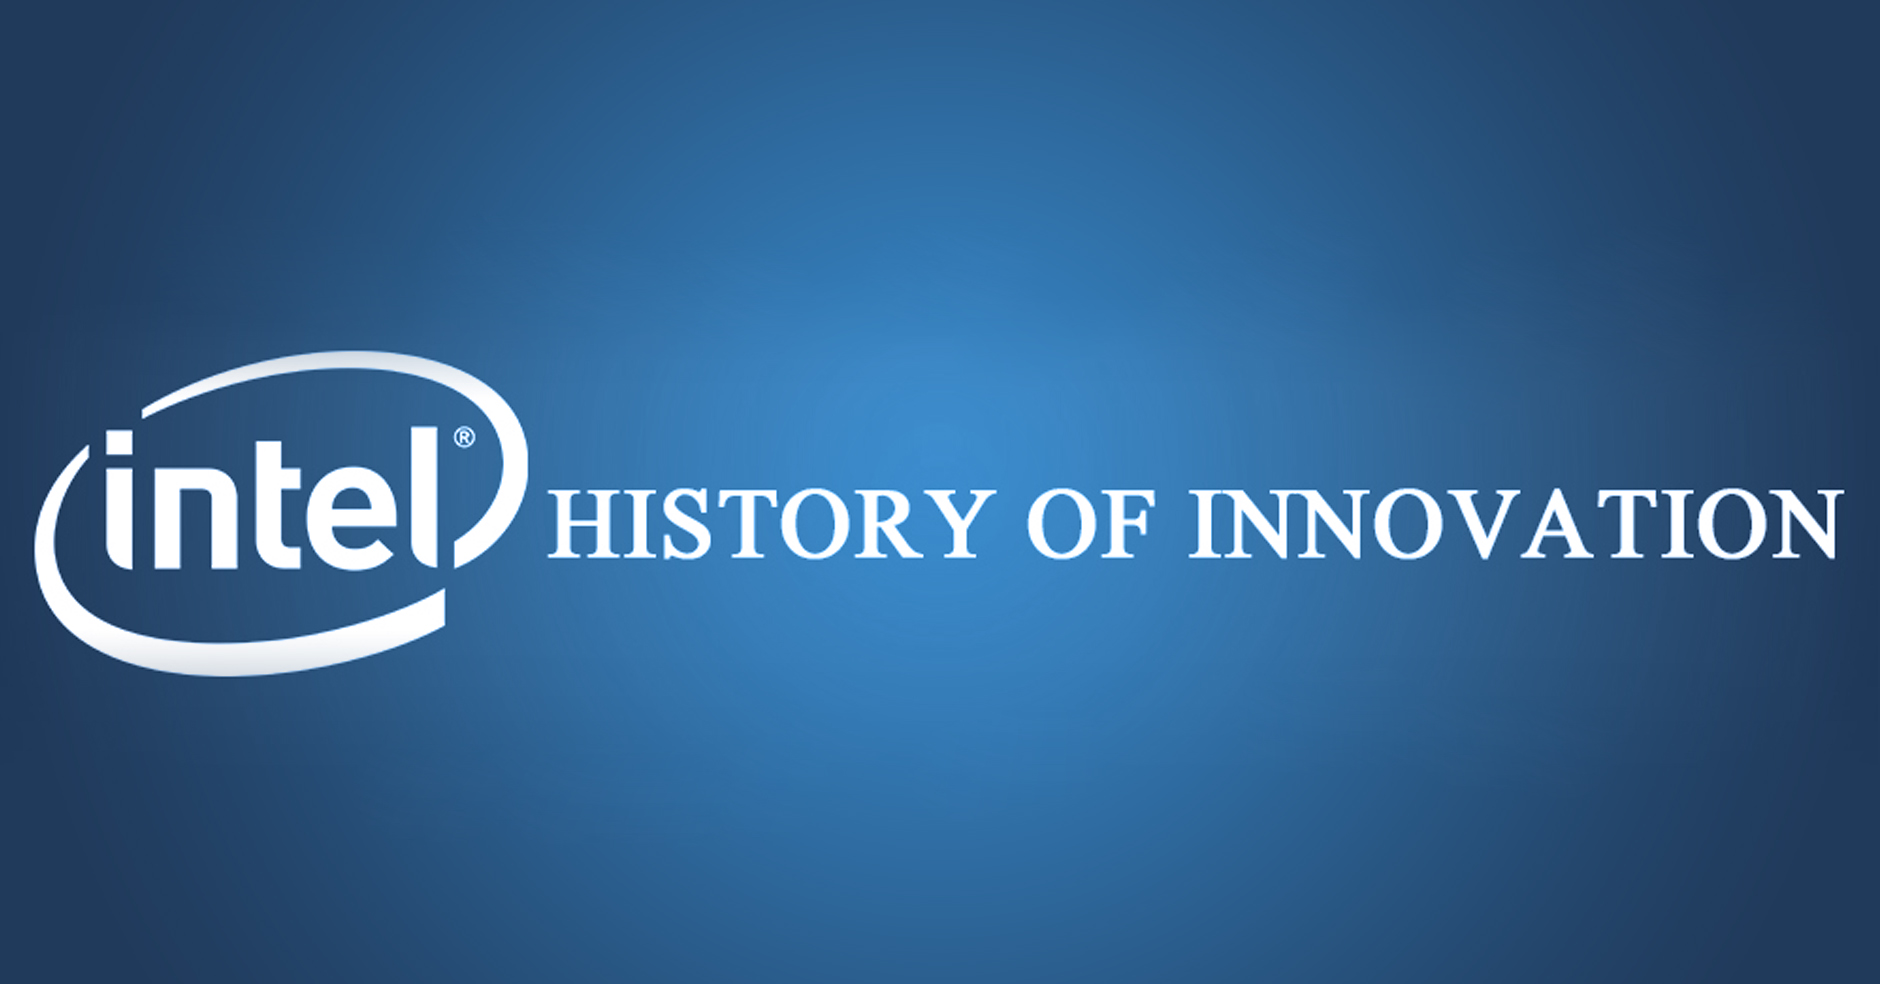 Intel’s history of innovation